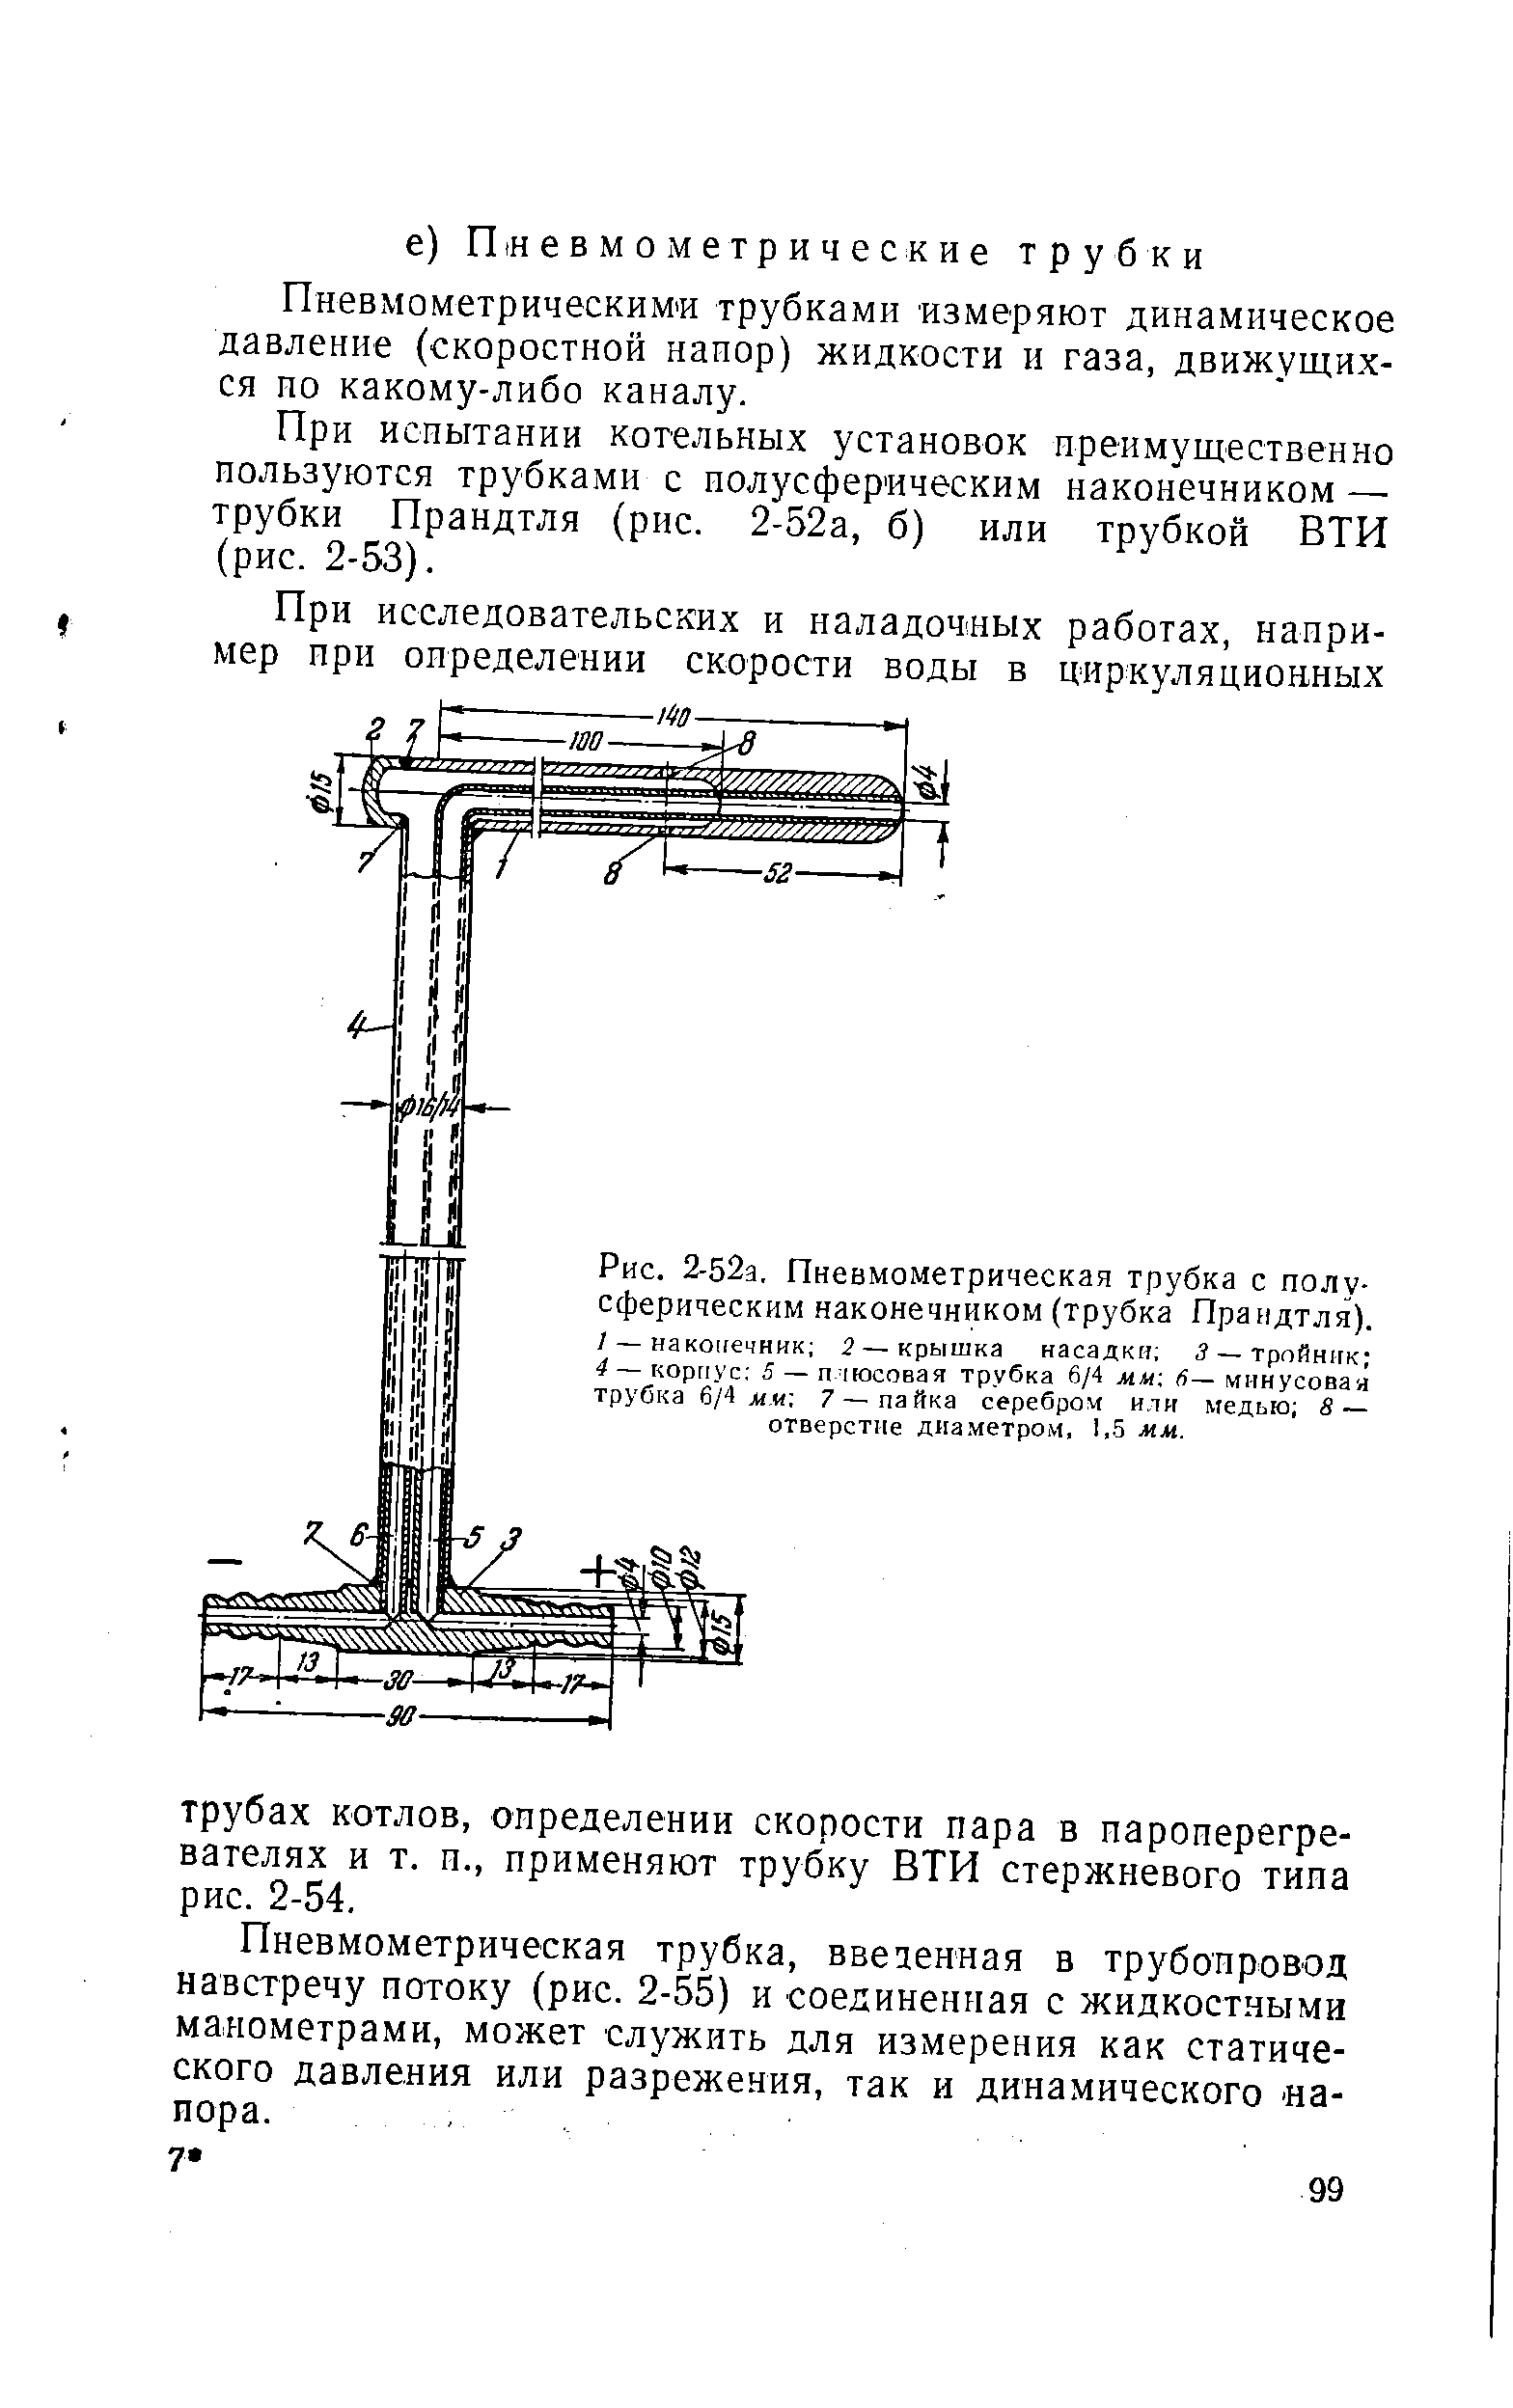 Рис. 2-52а, Пневмометрическая трубка с полусферическим наконечником (трубка Прандтля).
